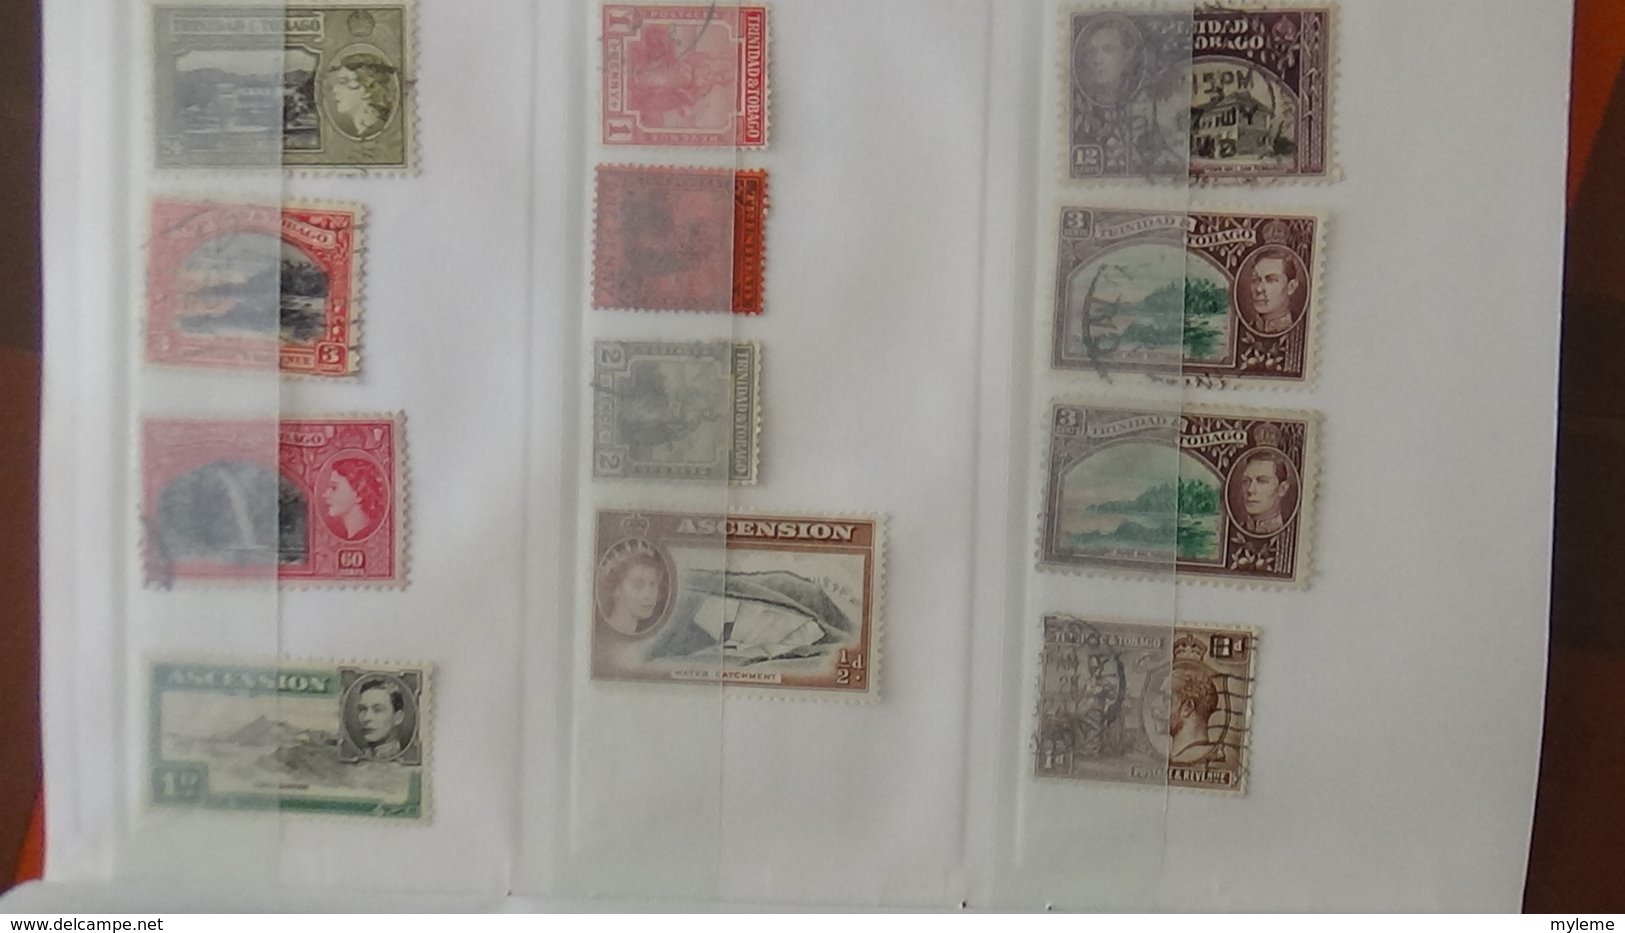 Carnet à choix de timbres anciens de différents pays A saisir !!!